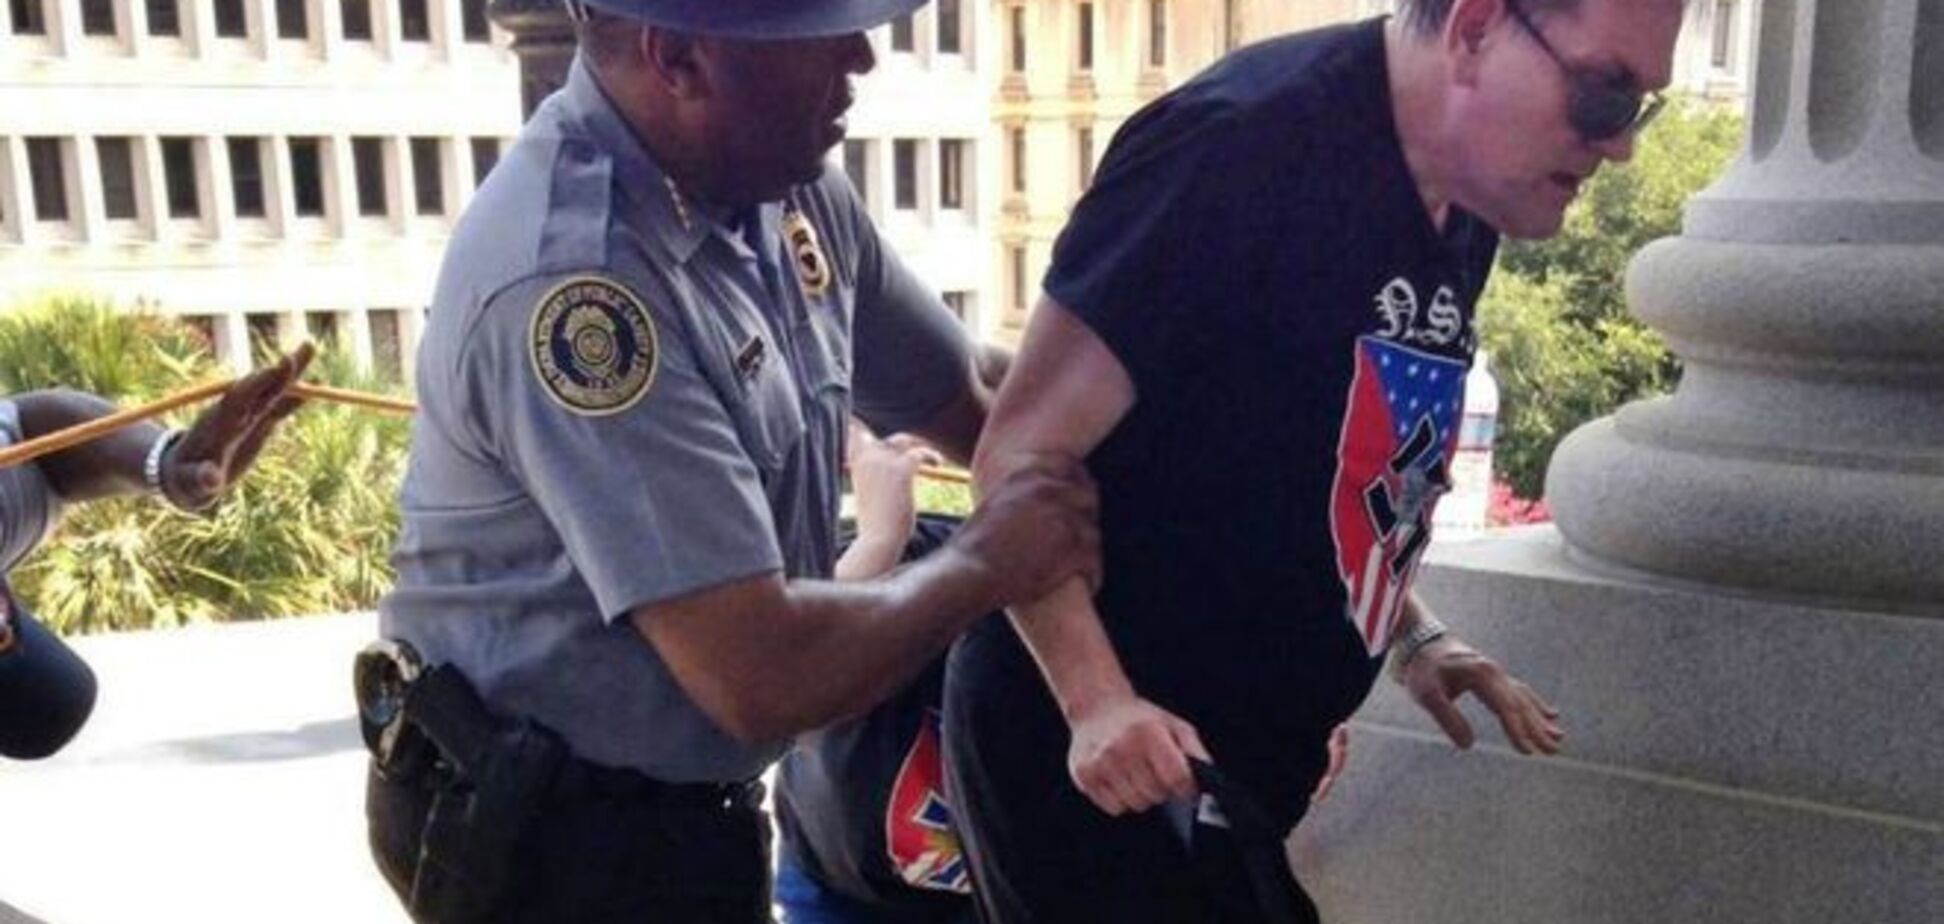 Фото чернокожего полицейского, который спасает расиста, стало хитом в соцсетях США